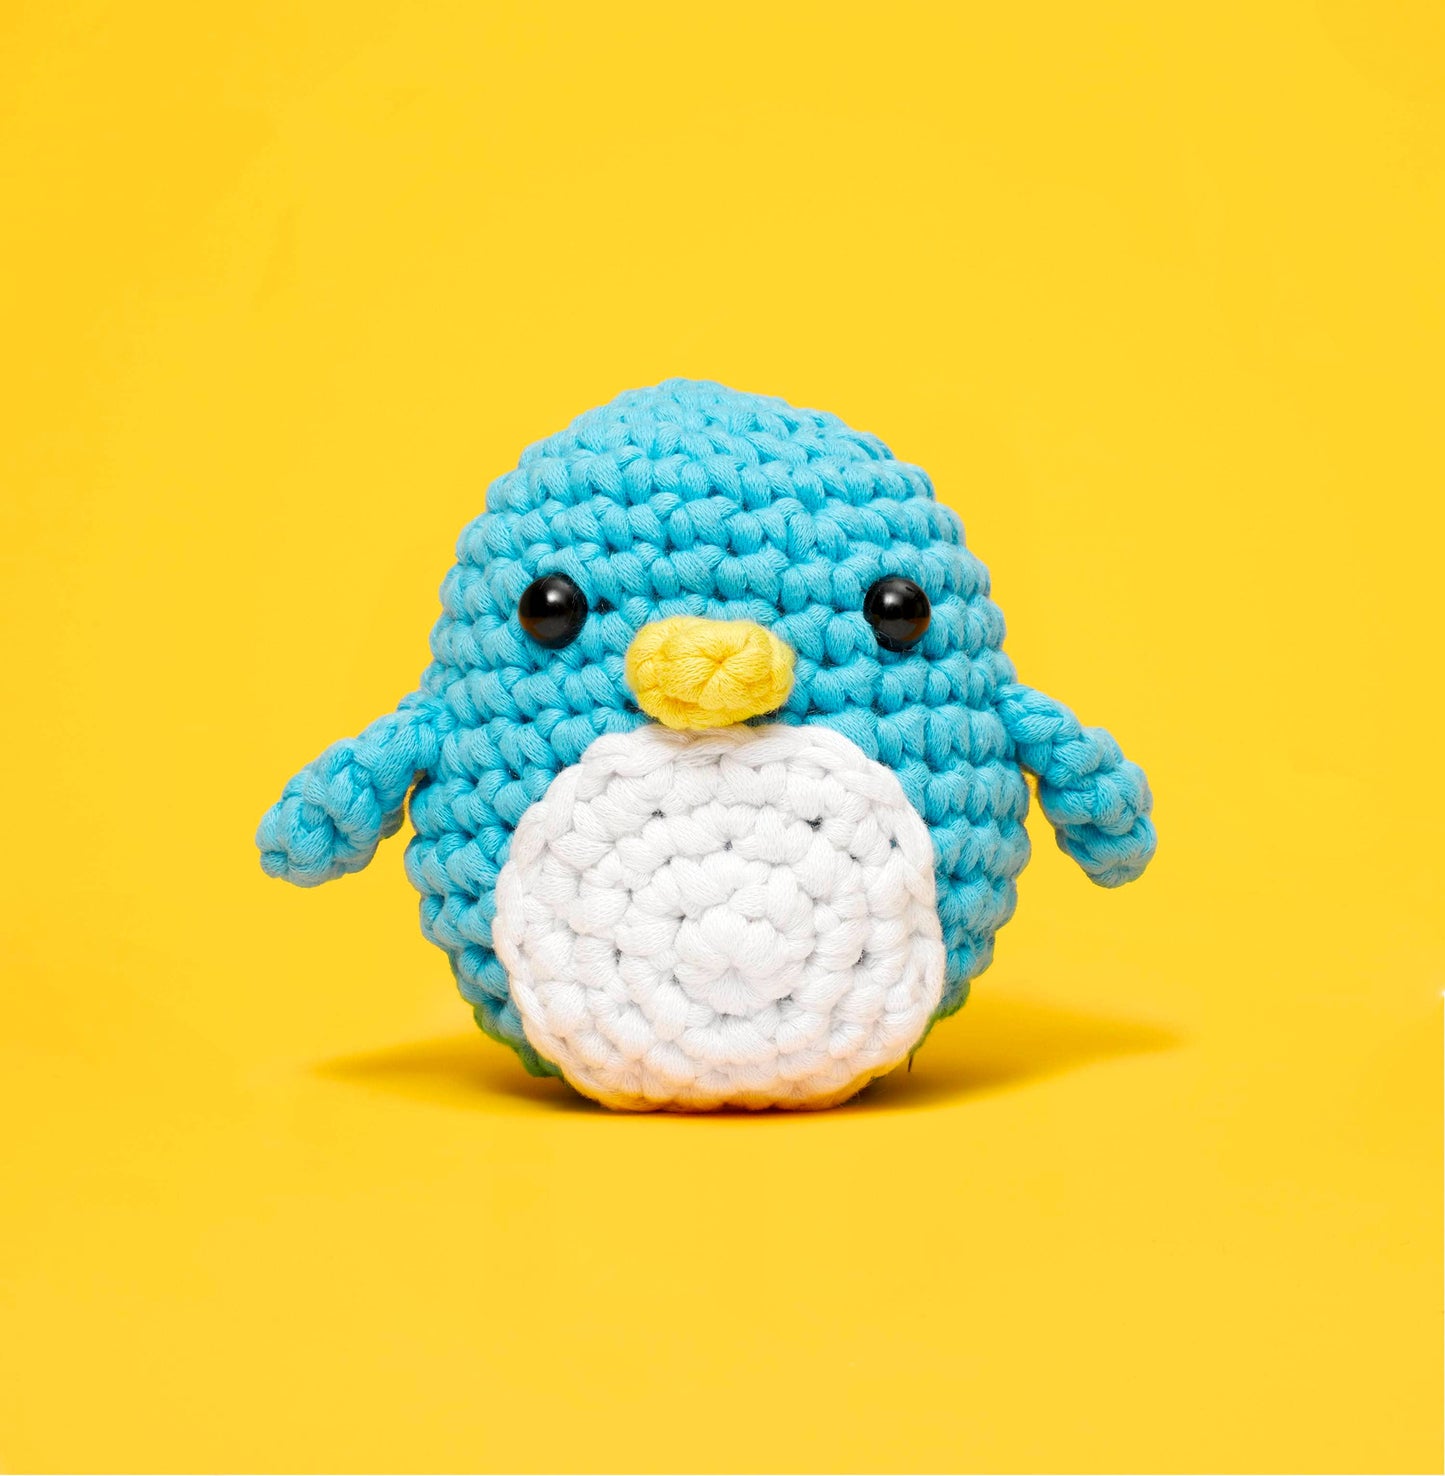 Pierre the Penguin Beginner Crochet Kit